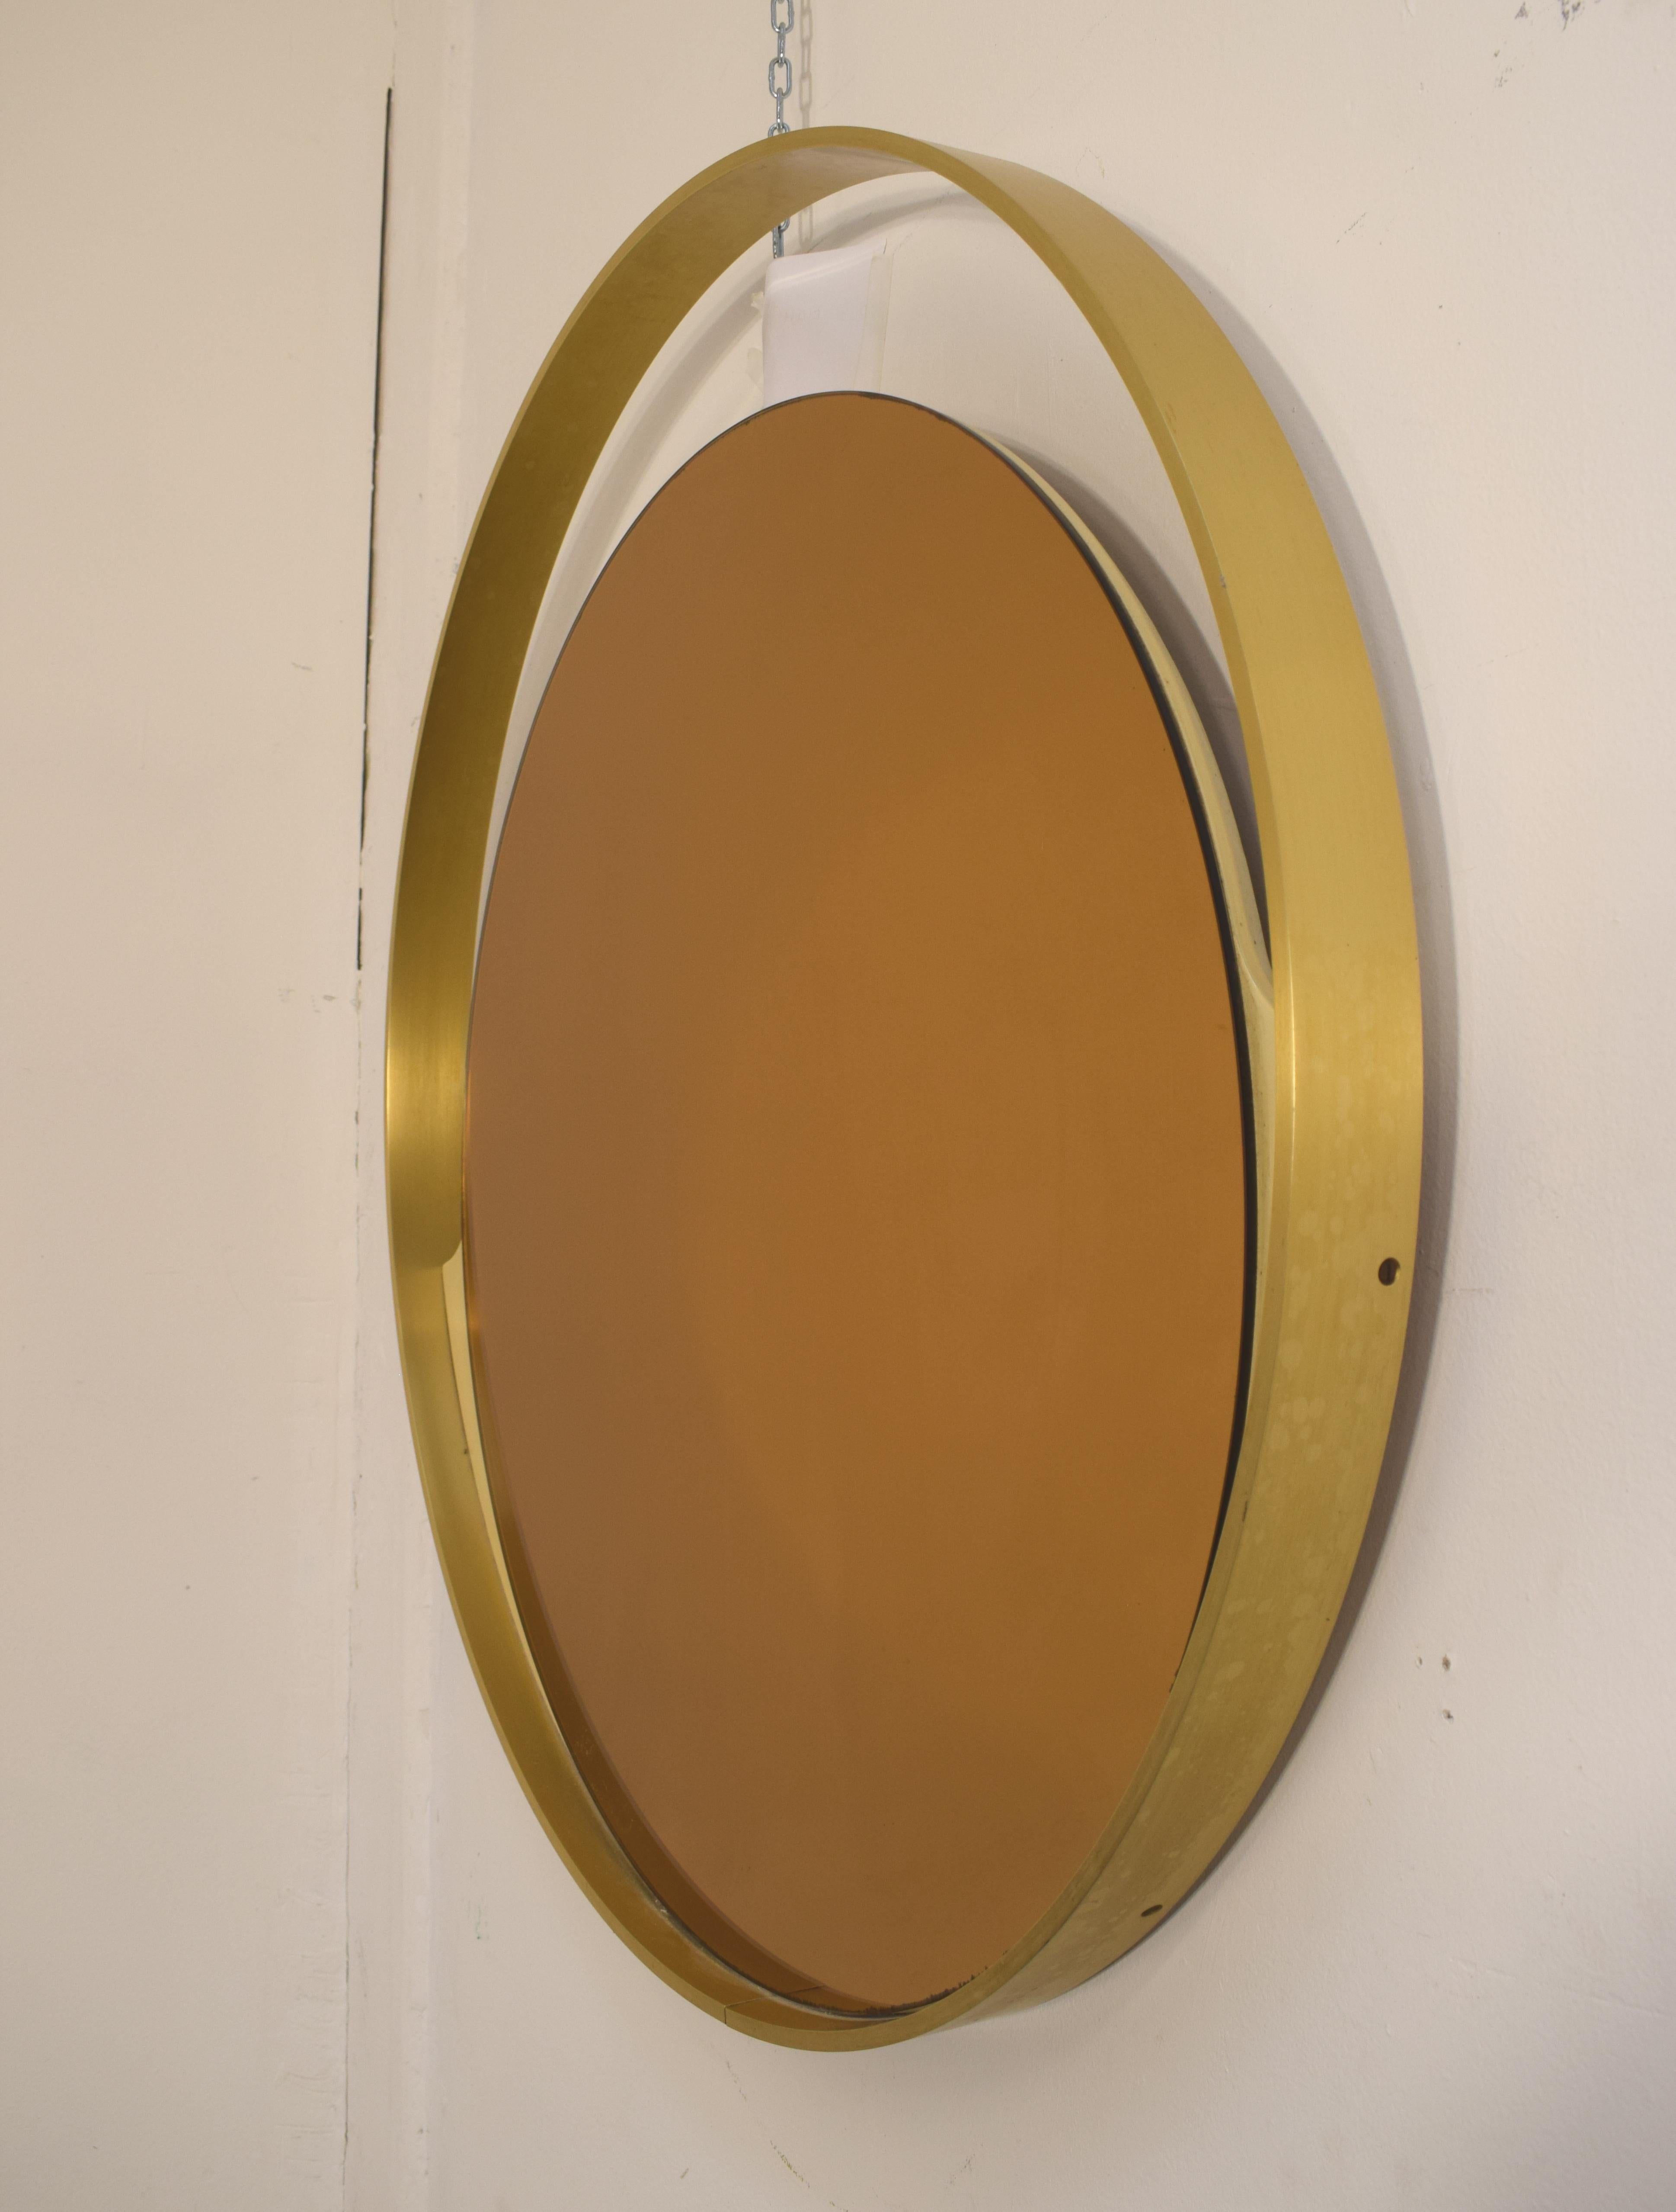 Miroir rond italien en laiton, années 1960.

Dimensions : D= 80 cm ; D= 5 cm.